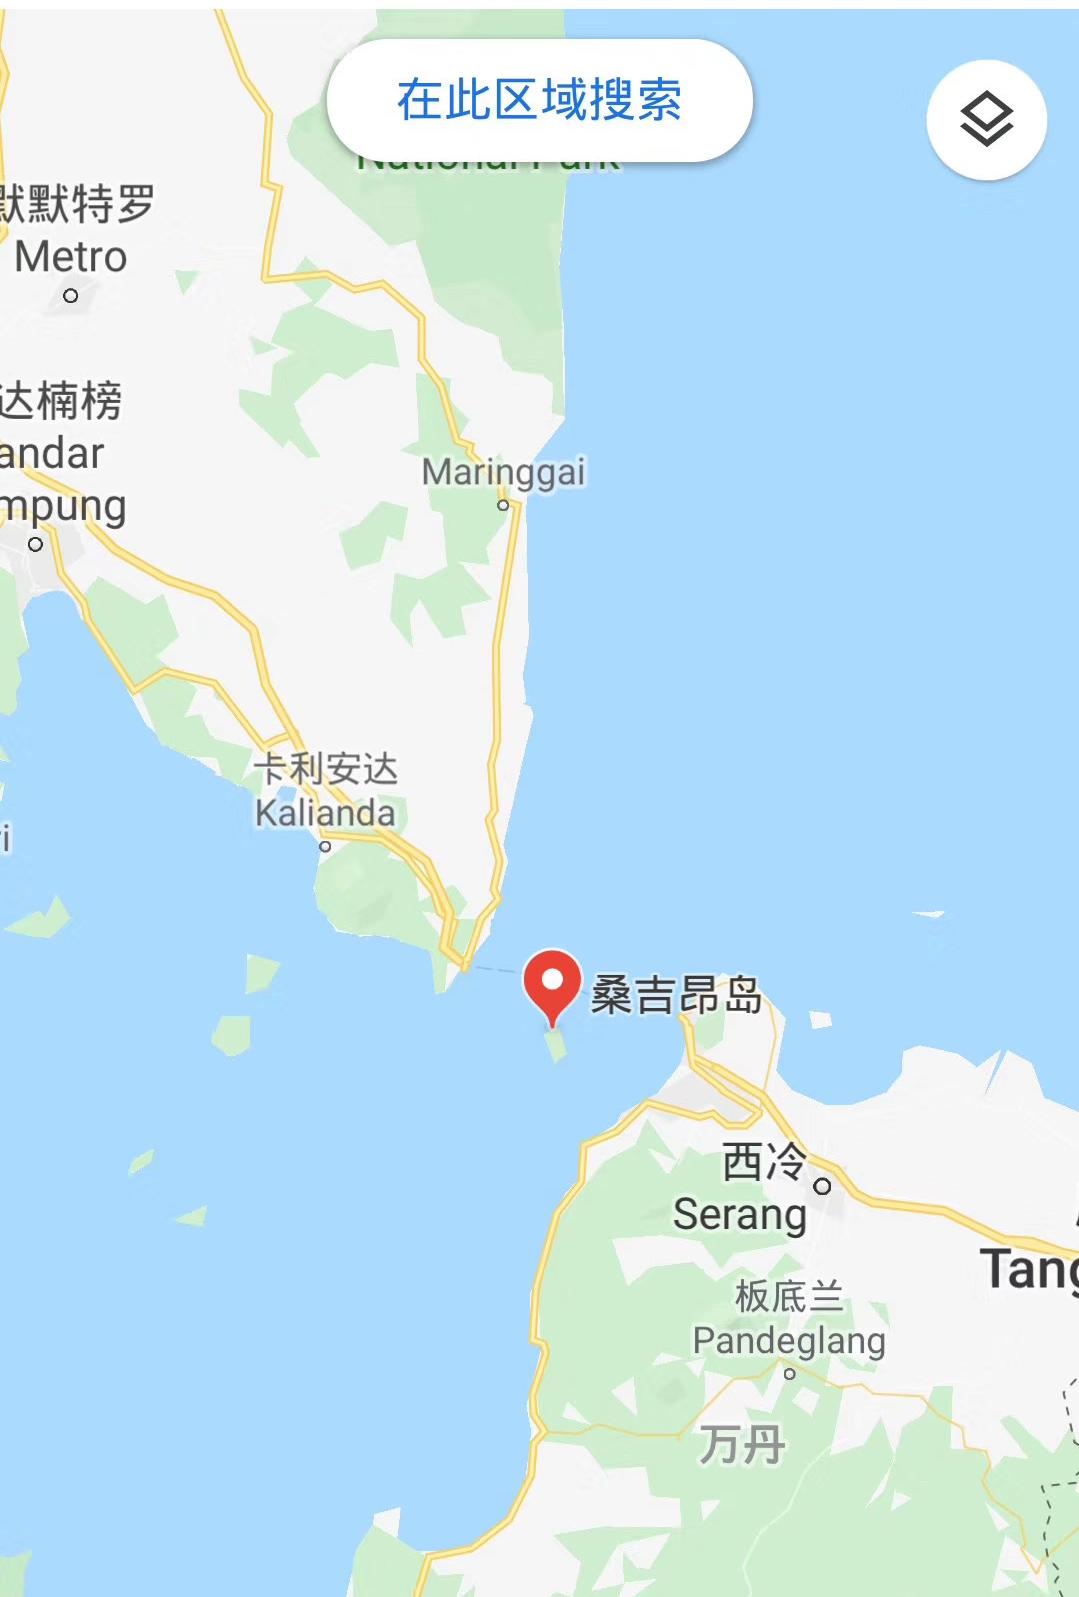 三名中国游客在印尼潜水失踪搜救正在进行